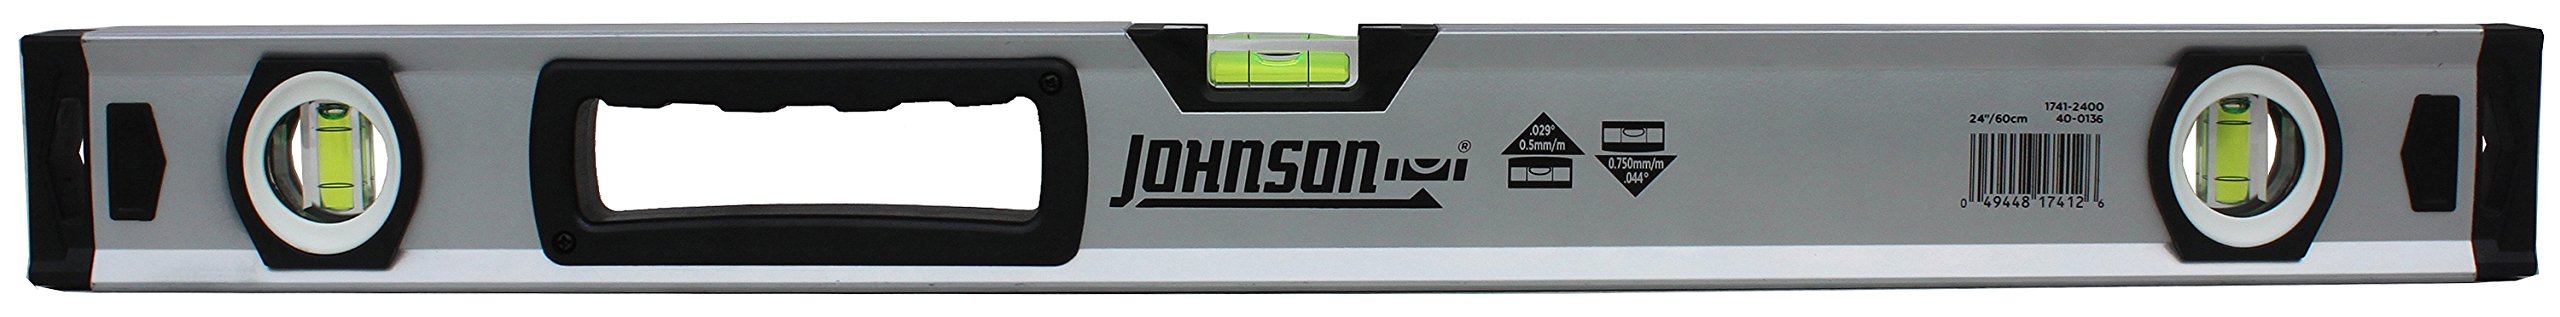 Johnson Level & Tool 1741-2400 Aluminum Box Level, 24", Orange, 1 Level